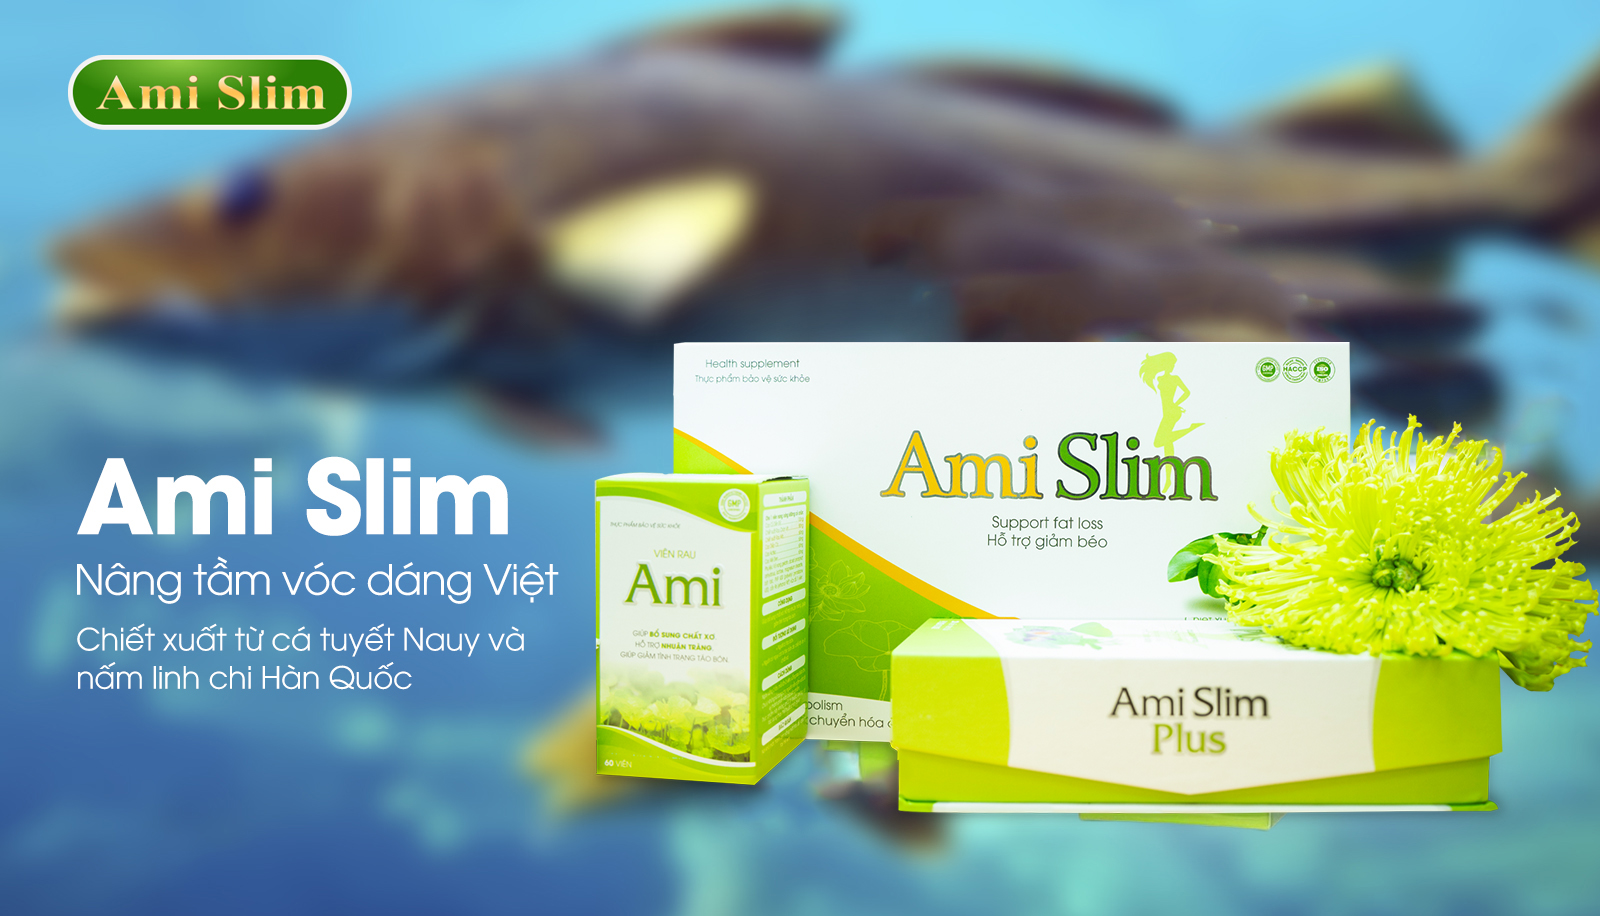 Ami Slim - thương hiệu thực phẩm hỗ trợ giảm cân an toàn và hiệu quả được nhiều người phản hồi tích cực